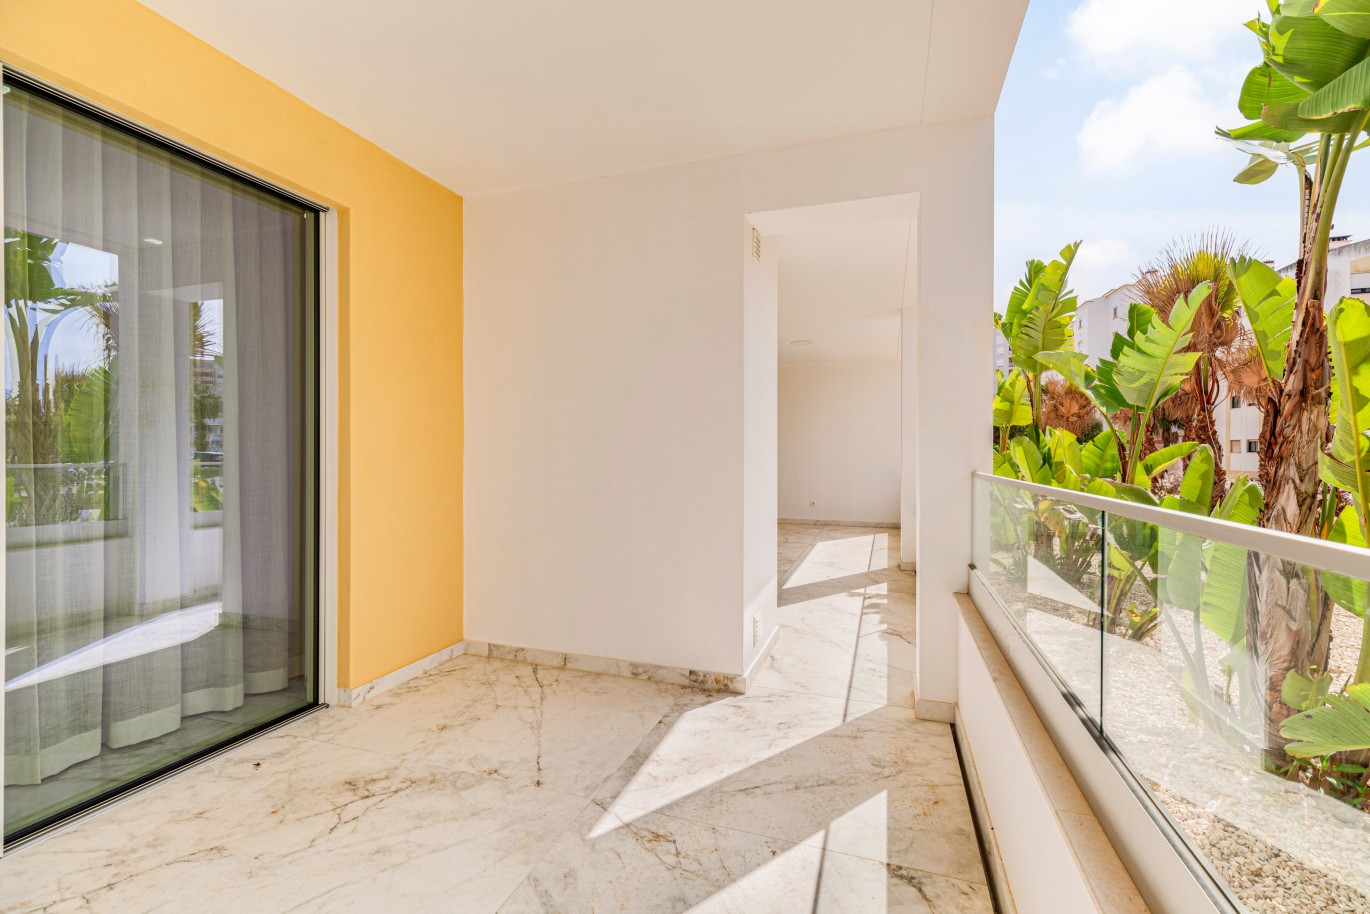 Verkauf einer Wohnung im Bau, mit Terrasse, Lagos, Algarve, Portugal_238261